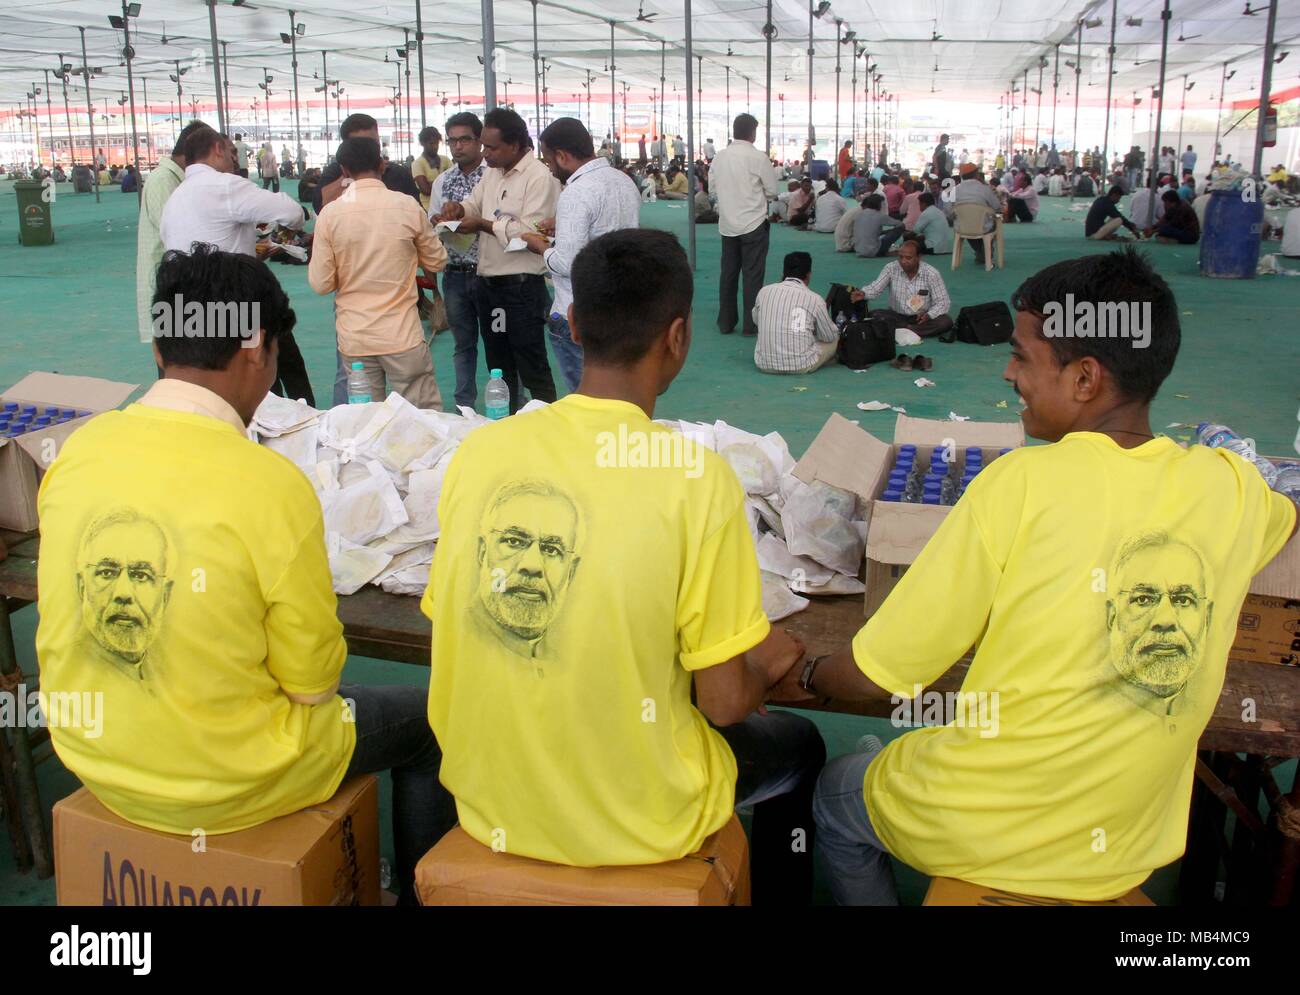 MUMBAI, India - 6 aprile: cibo gratuito stallo per i sostenitori e i lavoratori durante la grande celebrazione del partito della fondazione XXXVIII Giornata, a BKC terreno su Aprile 6, 2018 in Mumbai, India. Indirizzamento di un mega BJP rally, Shah reso pungente commento e detto i partiti di opposizione sono il tentativo di venire insieme solo per prendere il BJP nel prossimo anno di Lok Sabha sondaggi. Il BJP capo ha detto che era a causa di Primo Ministro Narendra Modi il timore che i partiti di opposizione sono teaming in su. Foto Stock